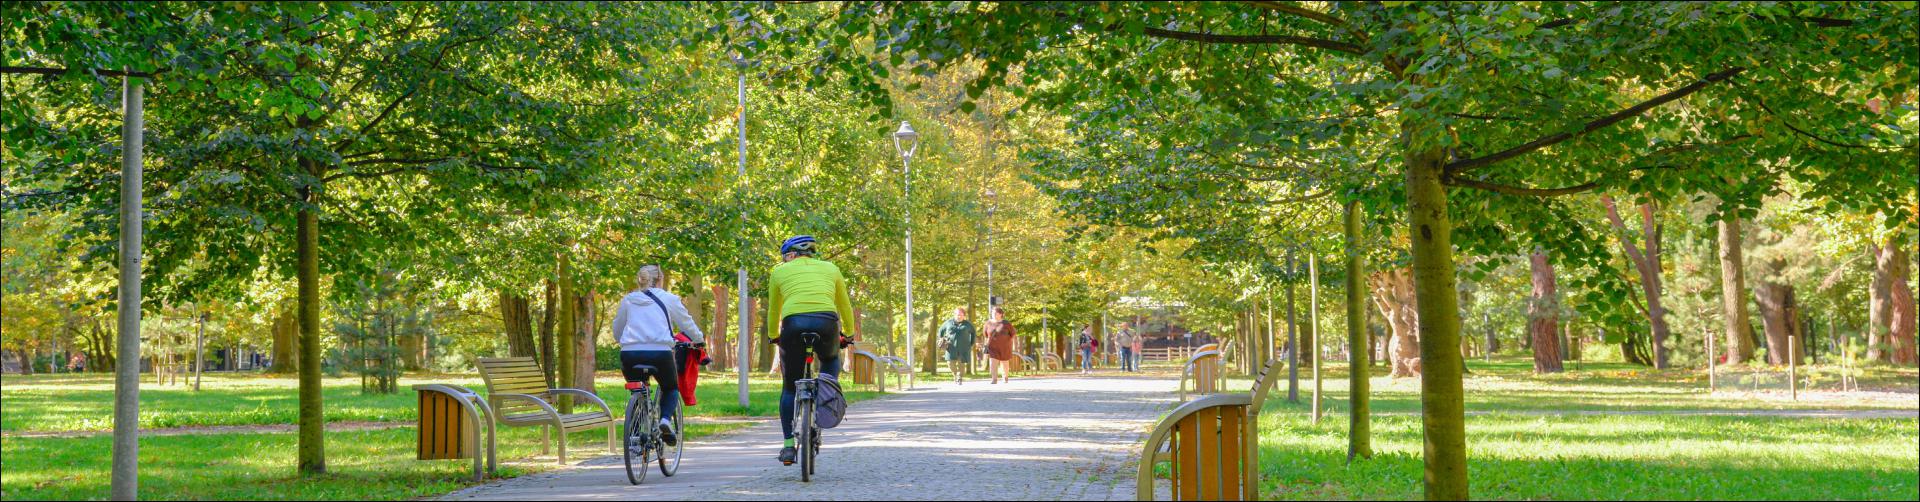 Główna aleja spacerowa w Parku Zdrojowym. Po deptaku z kostki brukowej dwie osoby jadą na rowerach – kobieta i mężczyzna. W tle deptakiem idą ludzie. Po obu stronach ścieżki rosną wysokie drzewa. Zdjęcie zrobione w jesienny dzień.